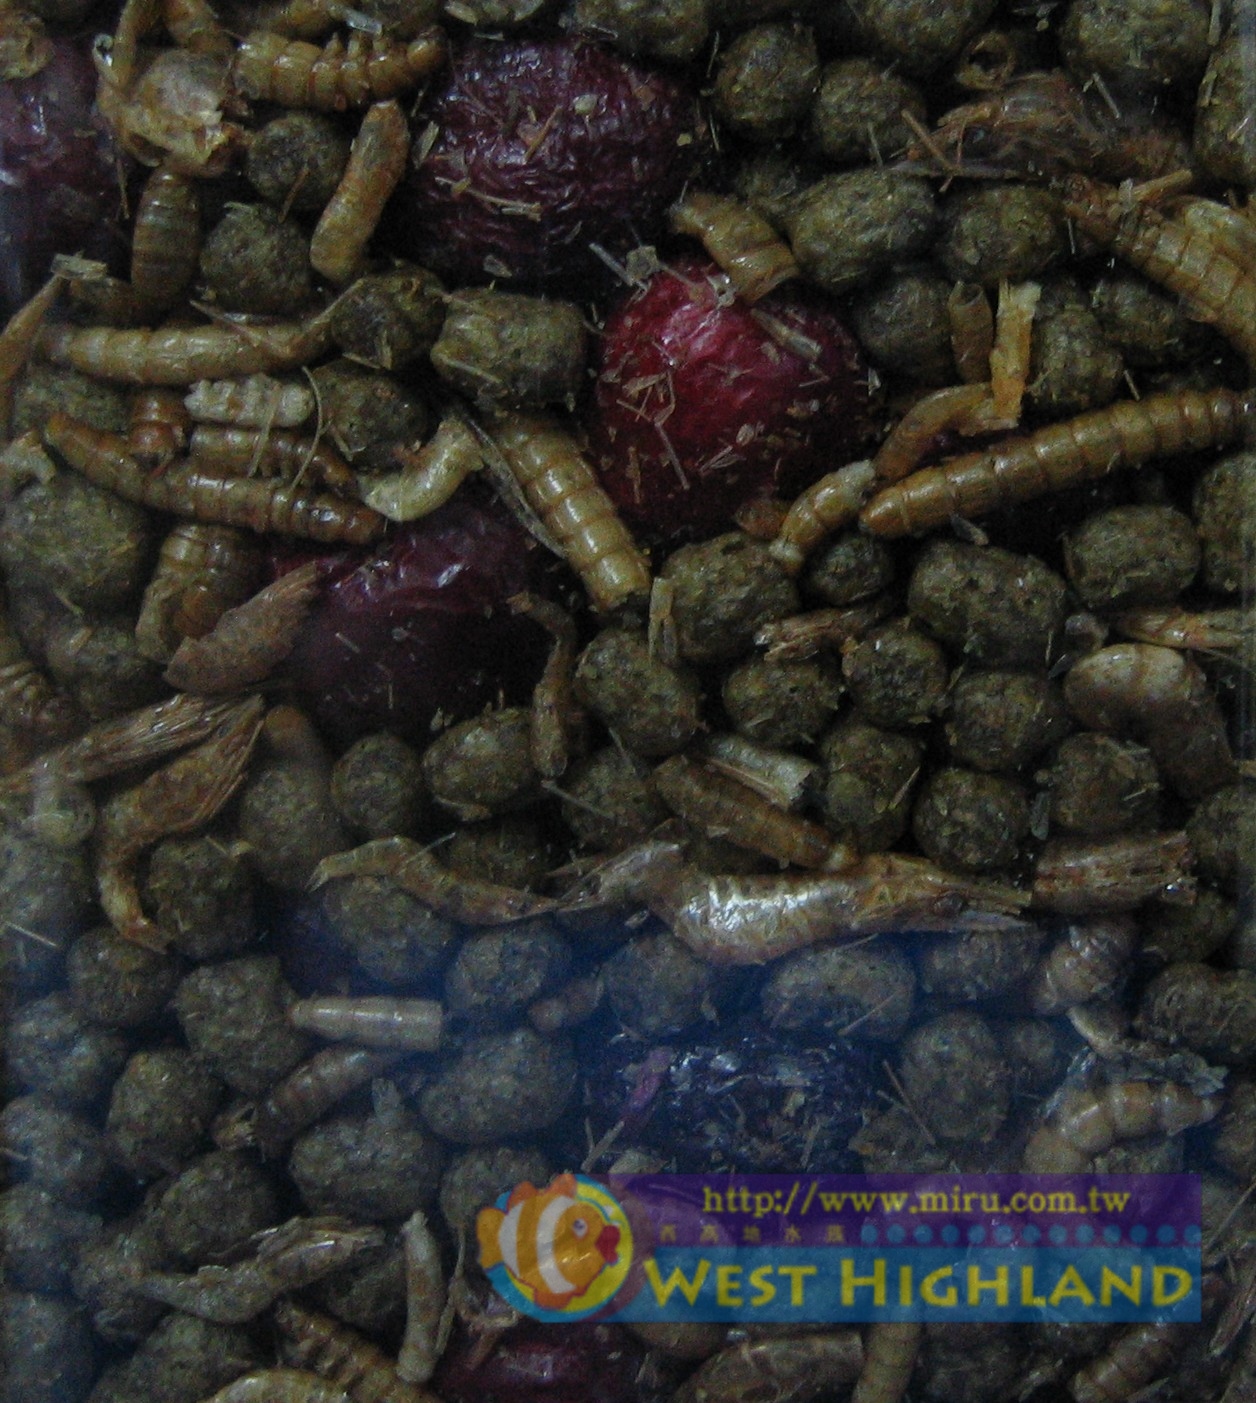 ZOO MED  精緻雜糧水龜飼料 (312g)-麵包蟲.乾燥蝦.小魚乾.紅棗